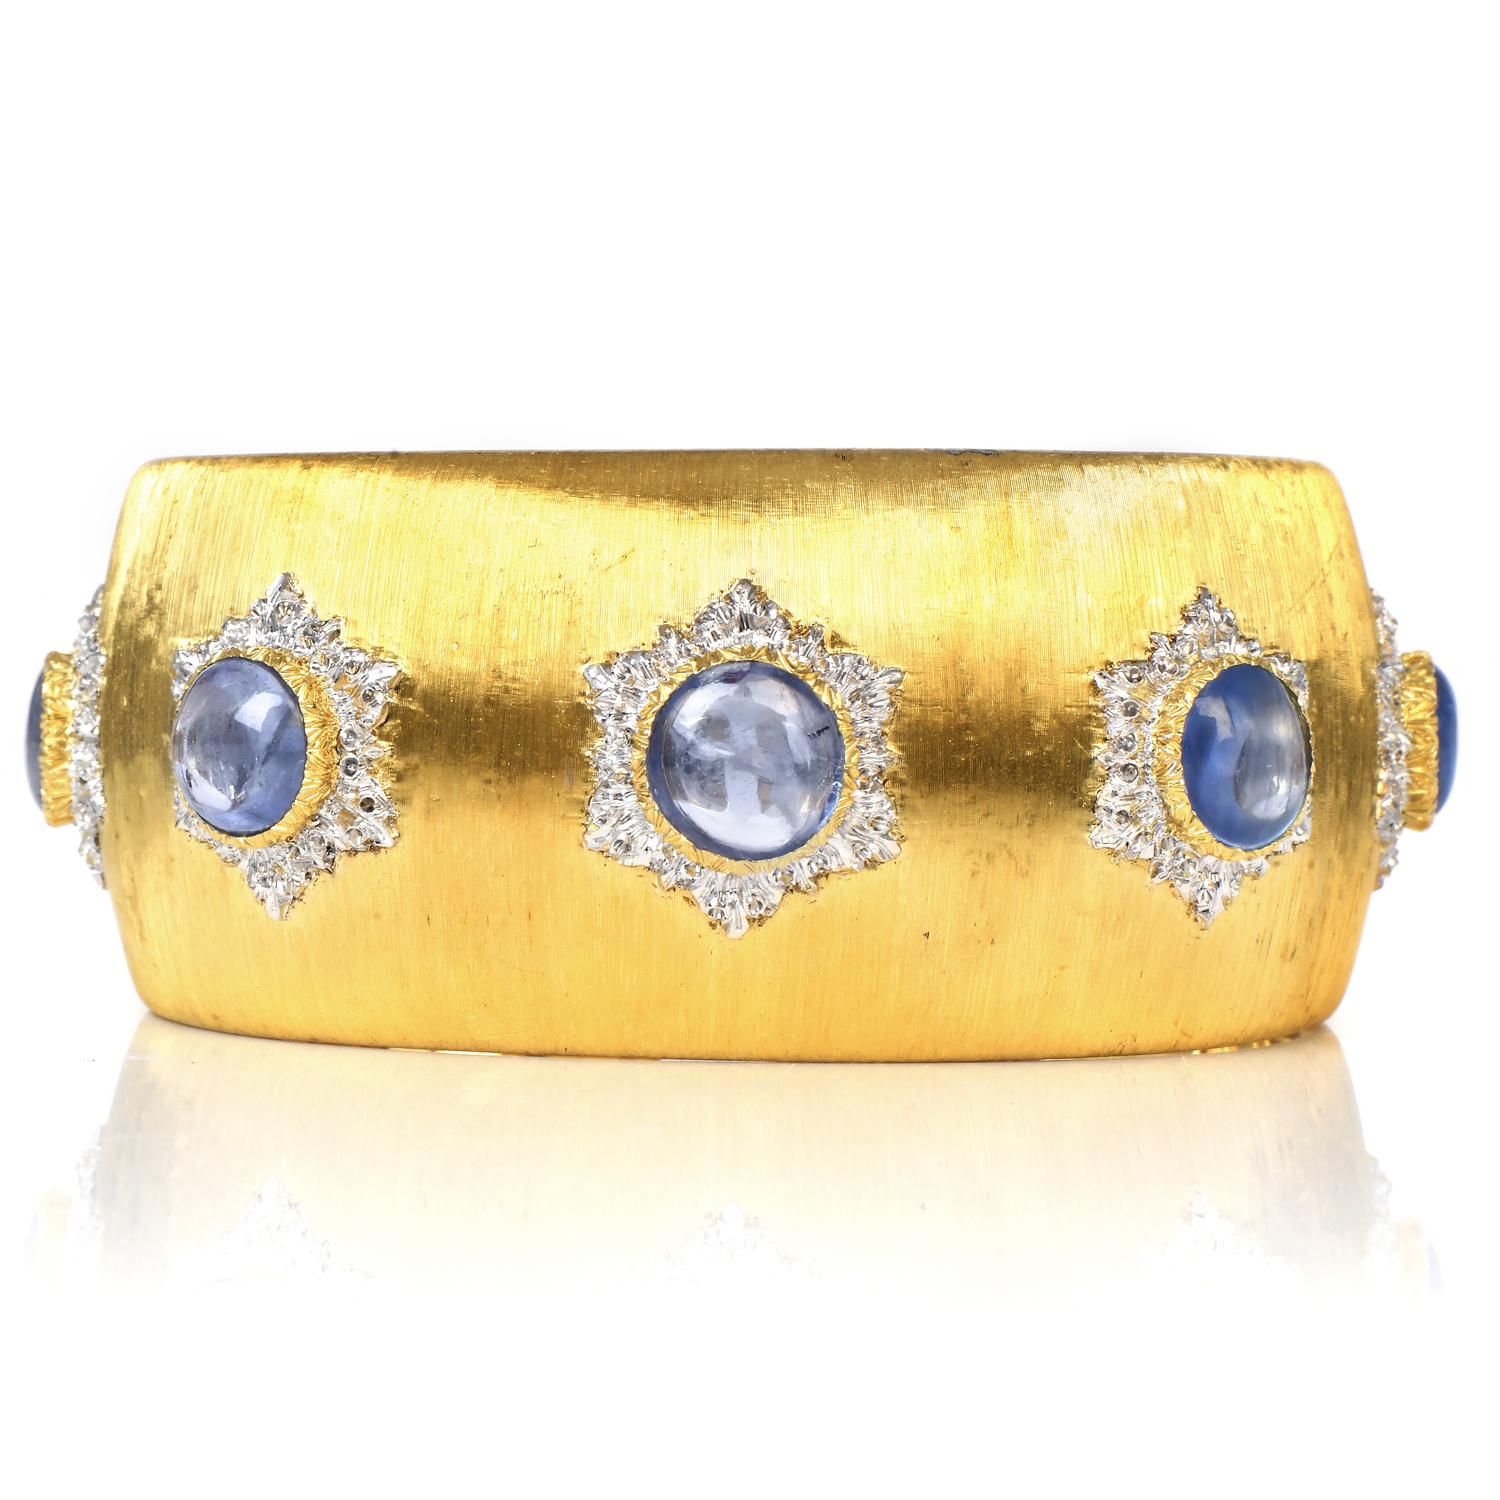 Dieses außerordentlich detailreiche Vintage Buccellati Sapphire Cuff Bracelet.

Inspiriert von der Kraft der Blumen, besteht er aus 60,4 Gramm luxuriösem 18K Gelb- und Weißgold.

Die satinierte Ausführung Rigato ist ein charakteristischer Stil des